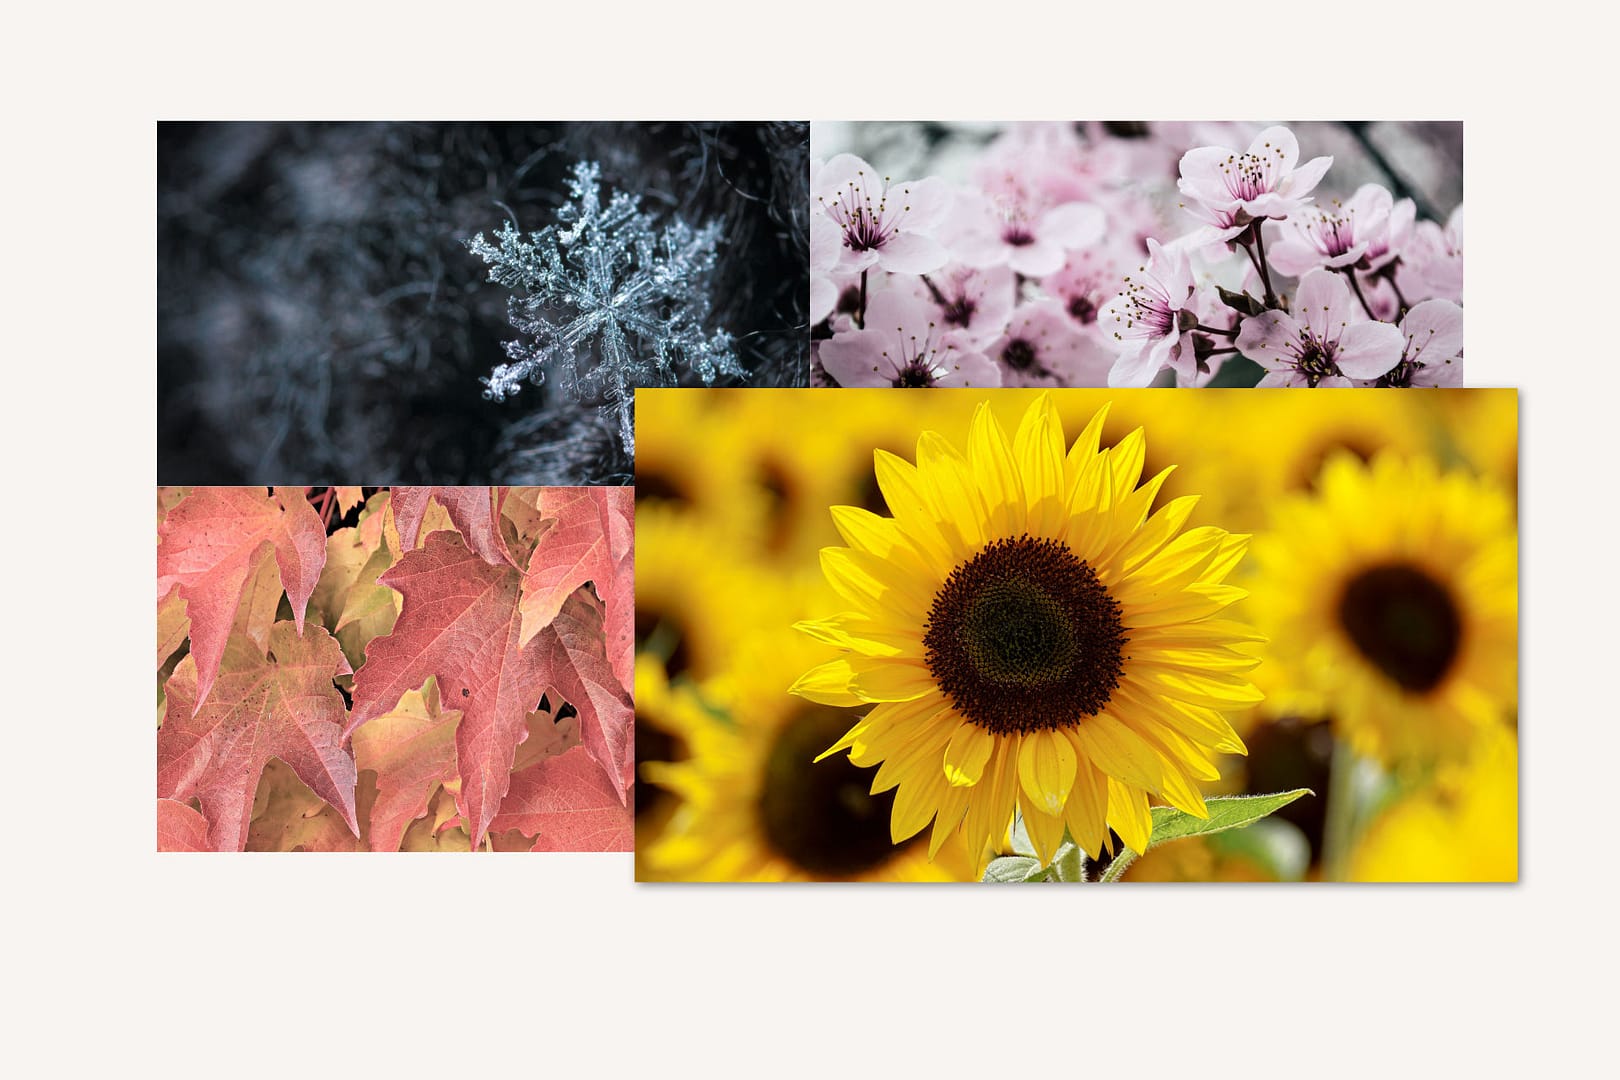 Bild mit dem hervorgehobenen Foto von gelben Sonnenblumen rechts unten im Bildbereich, und im Hintergrund jeweils ein Foto von orange-roten Ahornblättern links unten, einer blauen Schneeflocke links oben und rosa Kirschblüten rechts oben im Bildbereich